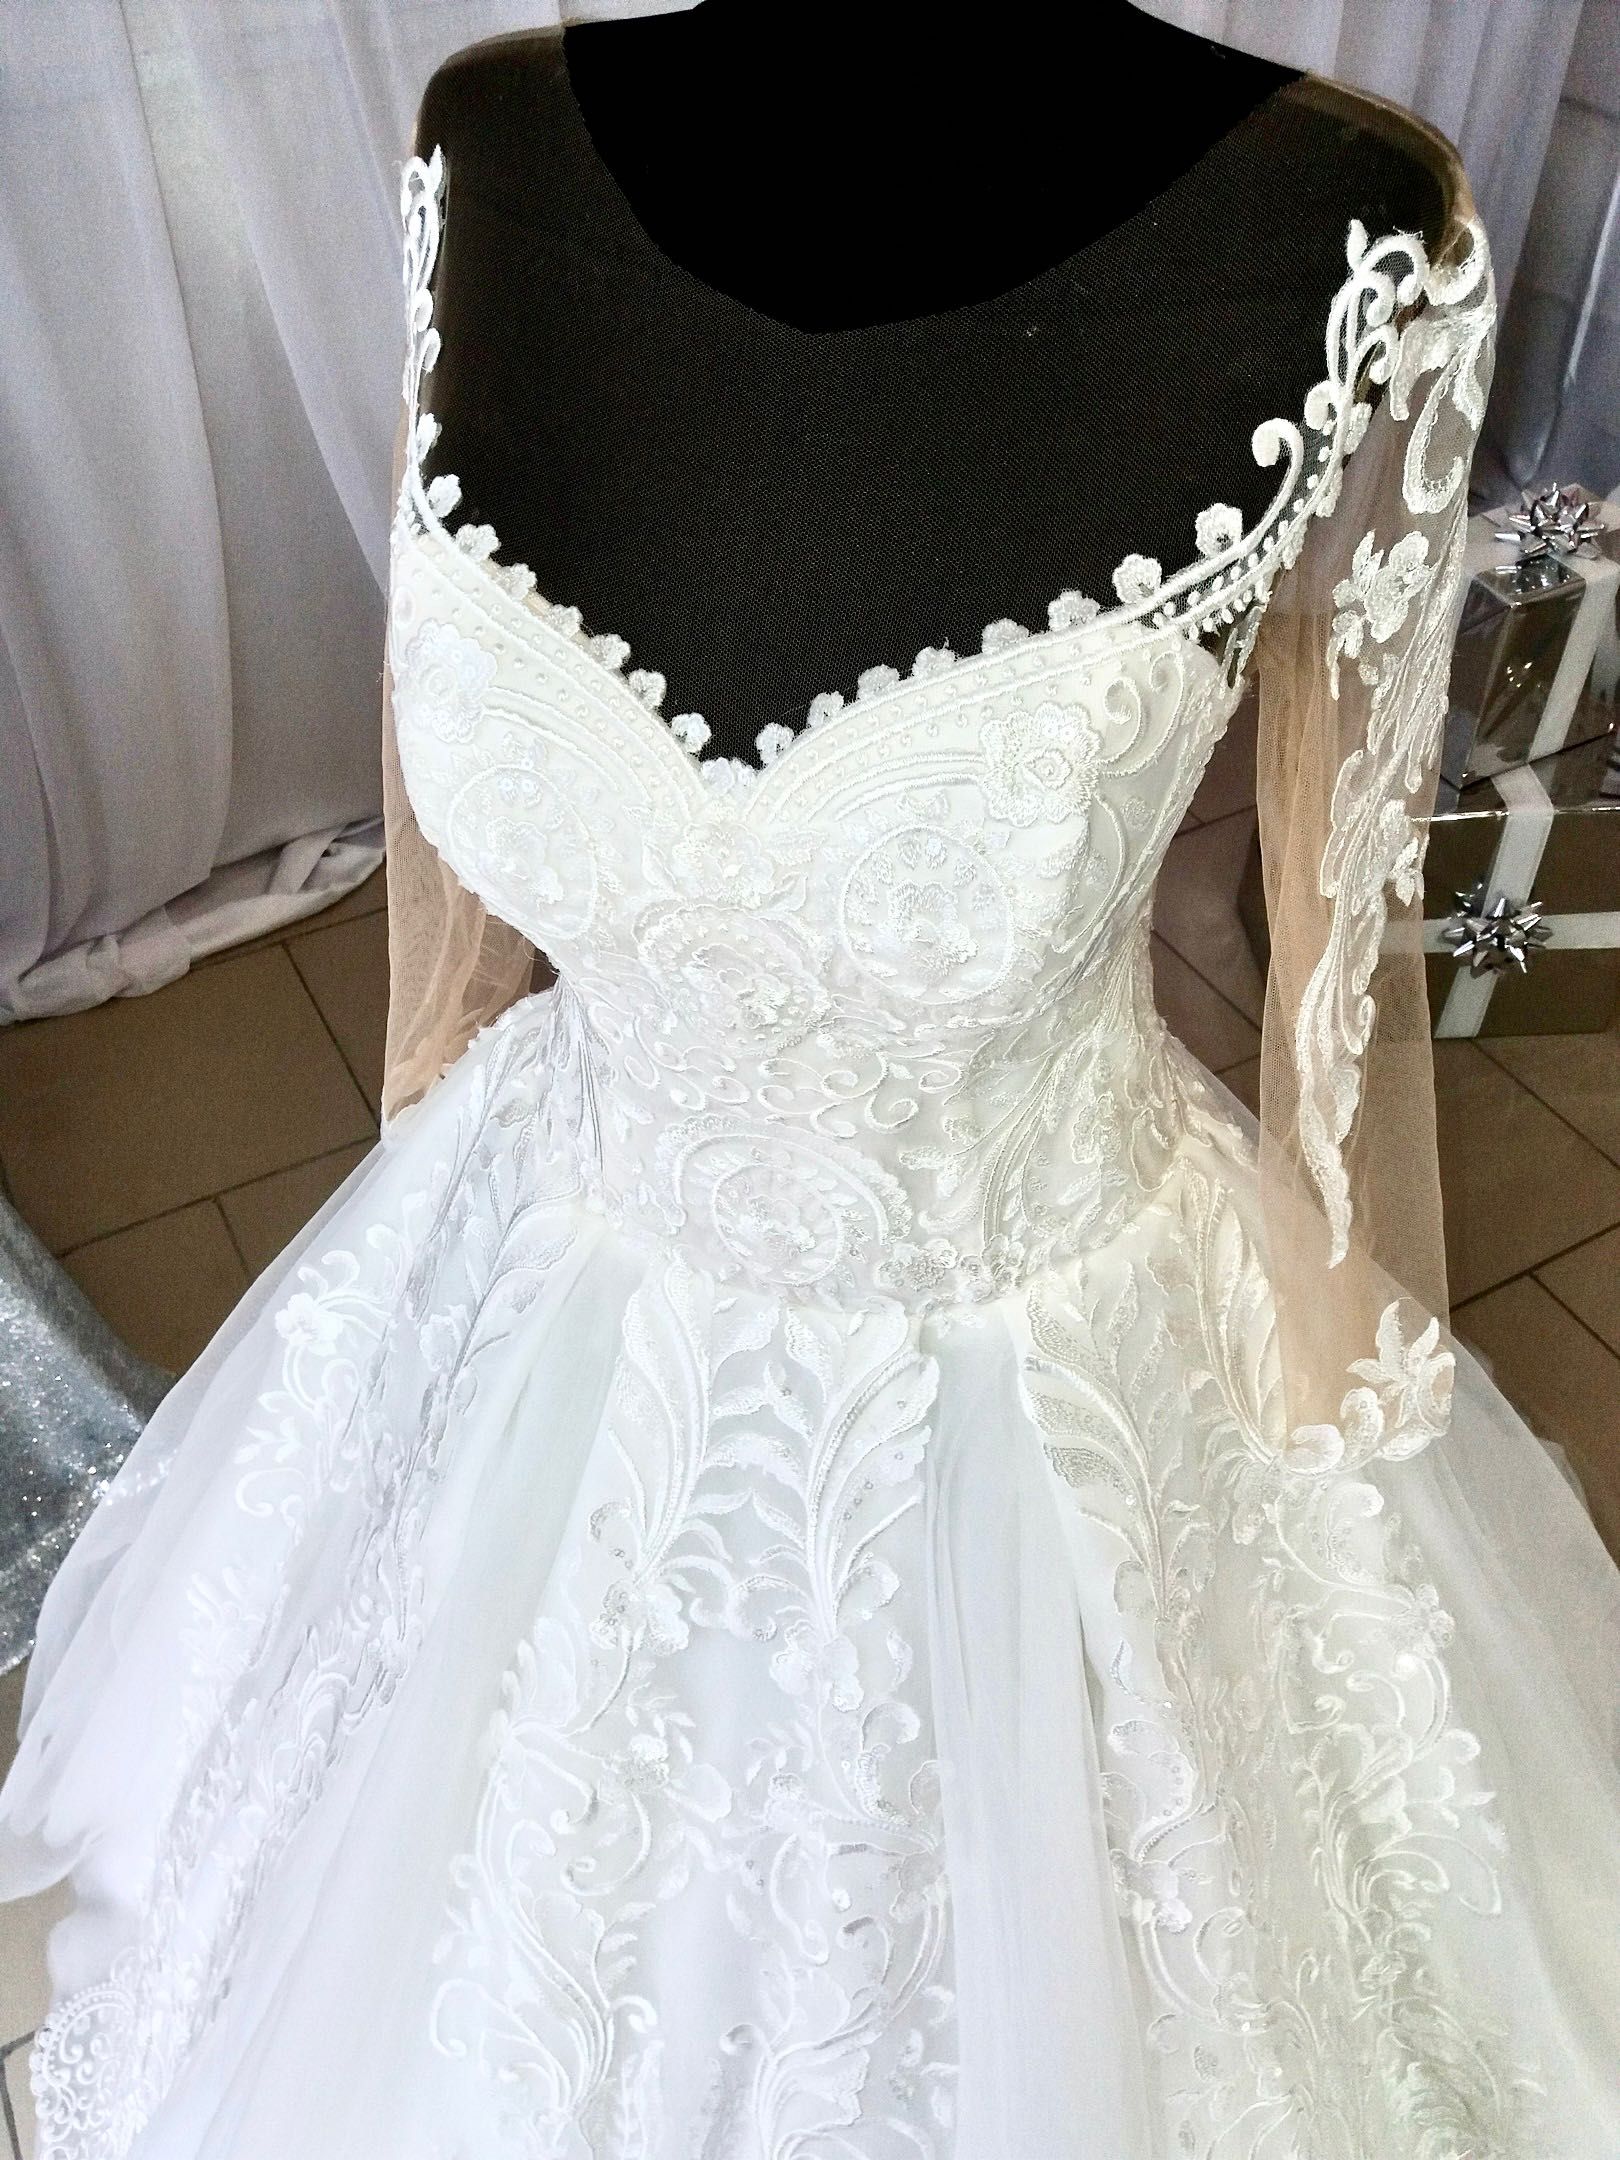 Свадебное платье с небольшим шлейфом